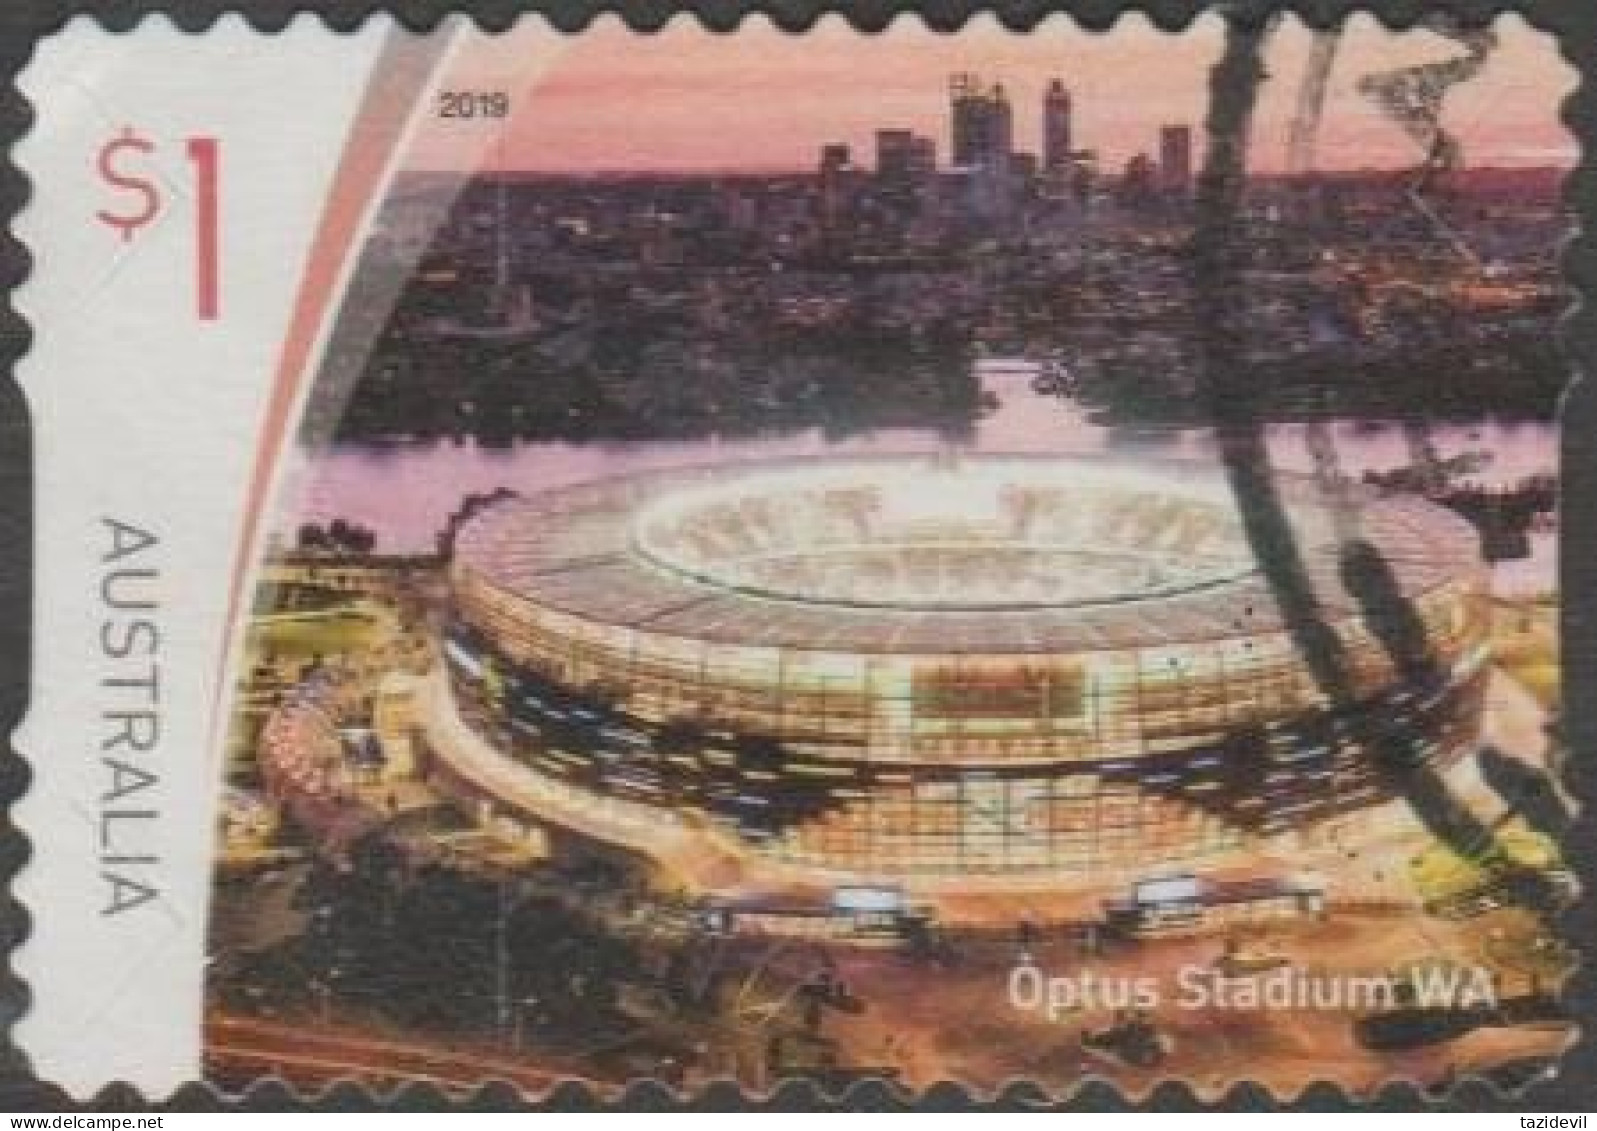 AUSTRALIA - DIE-CUT-USED 2019 $1.00 Sports Stadiums - Optus Stadium, Western Australia - Used Stamps